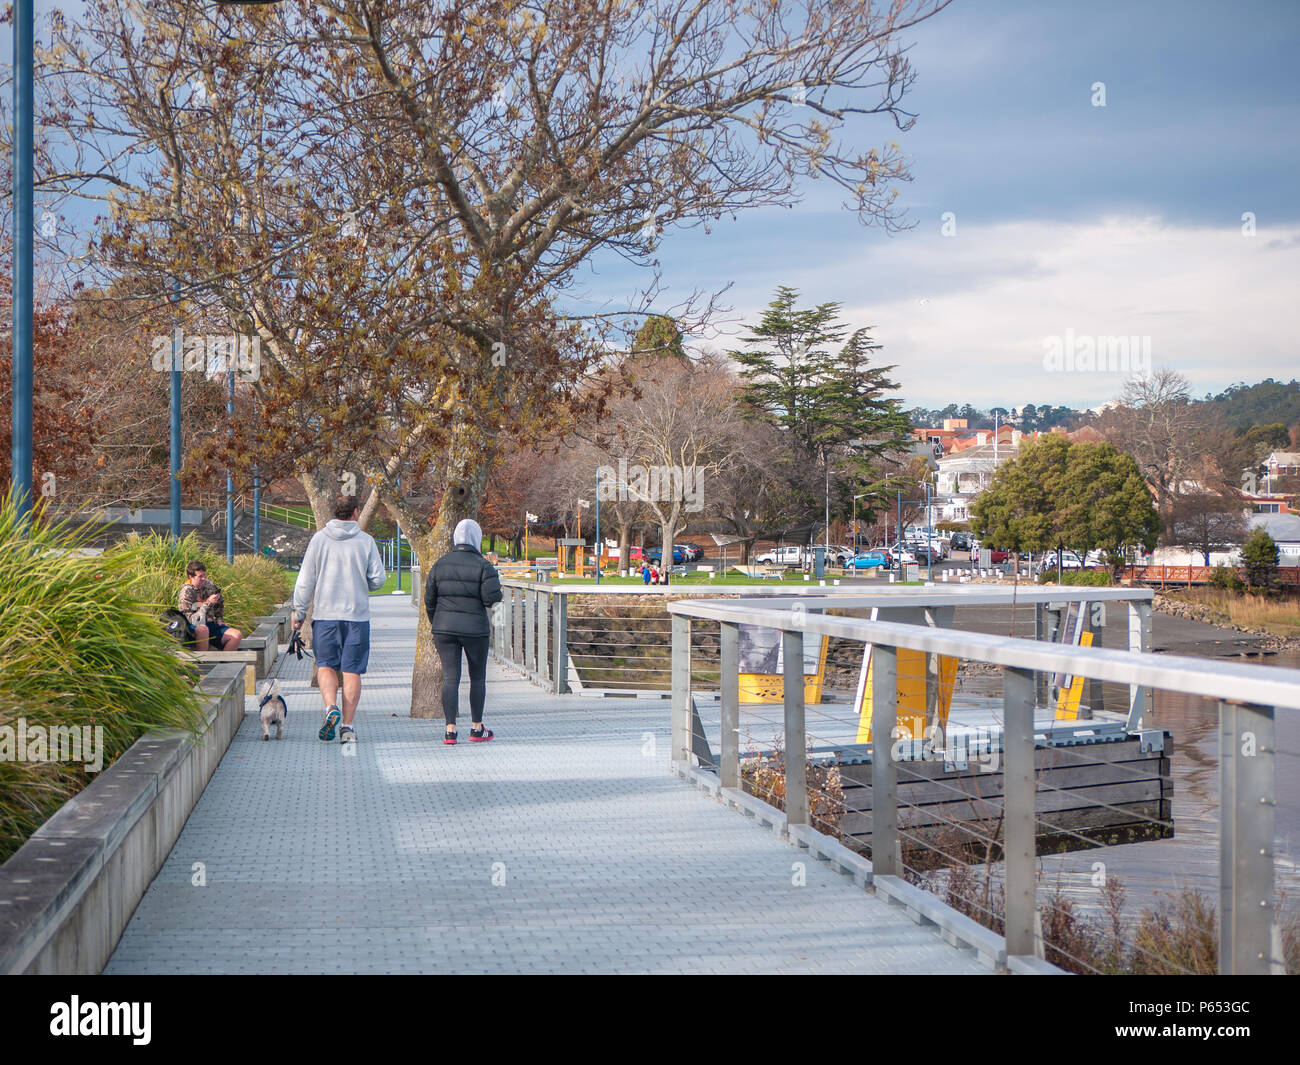 Persone in relax Royal Park da Tamar River nella città di Launceston. Il parco dispone di passerelle all'aperto e spazio di riproduzione. La Tasmania, Australia. Foto Stock